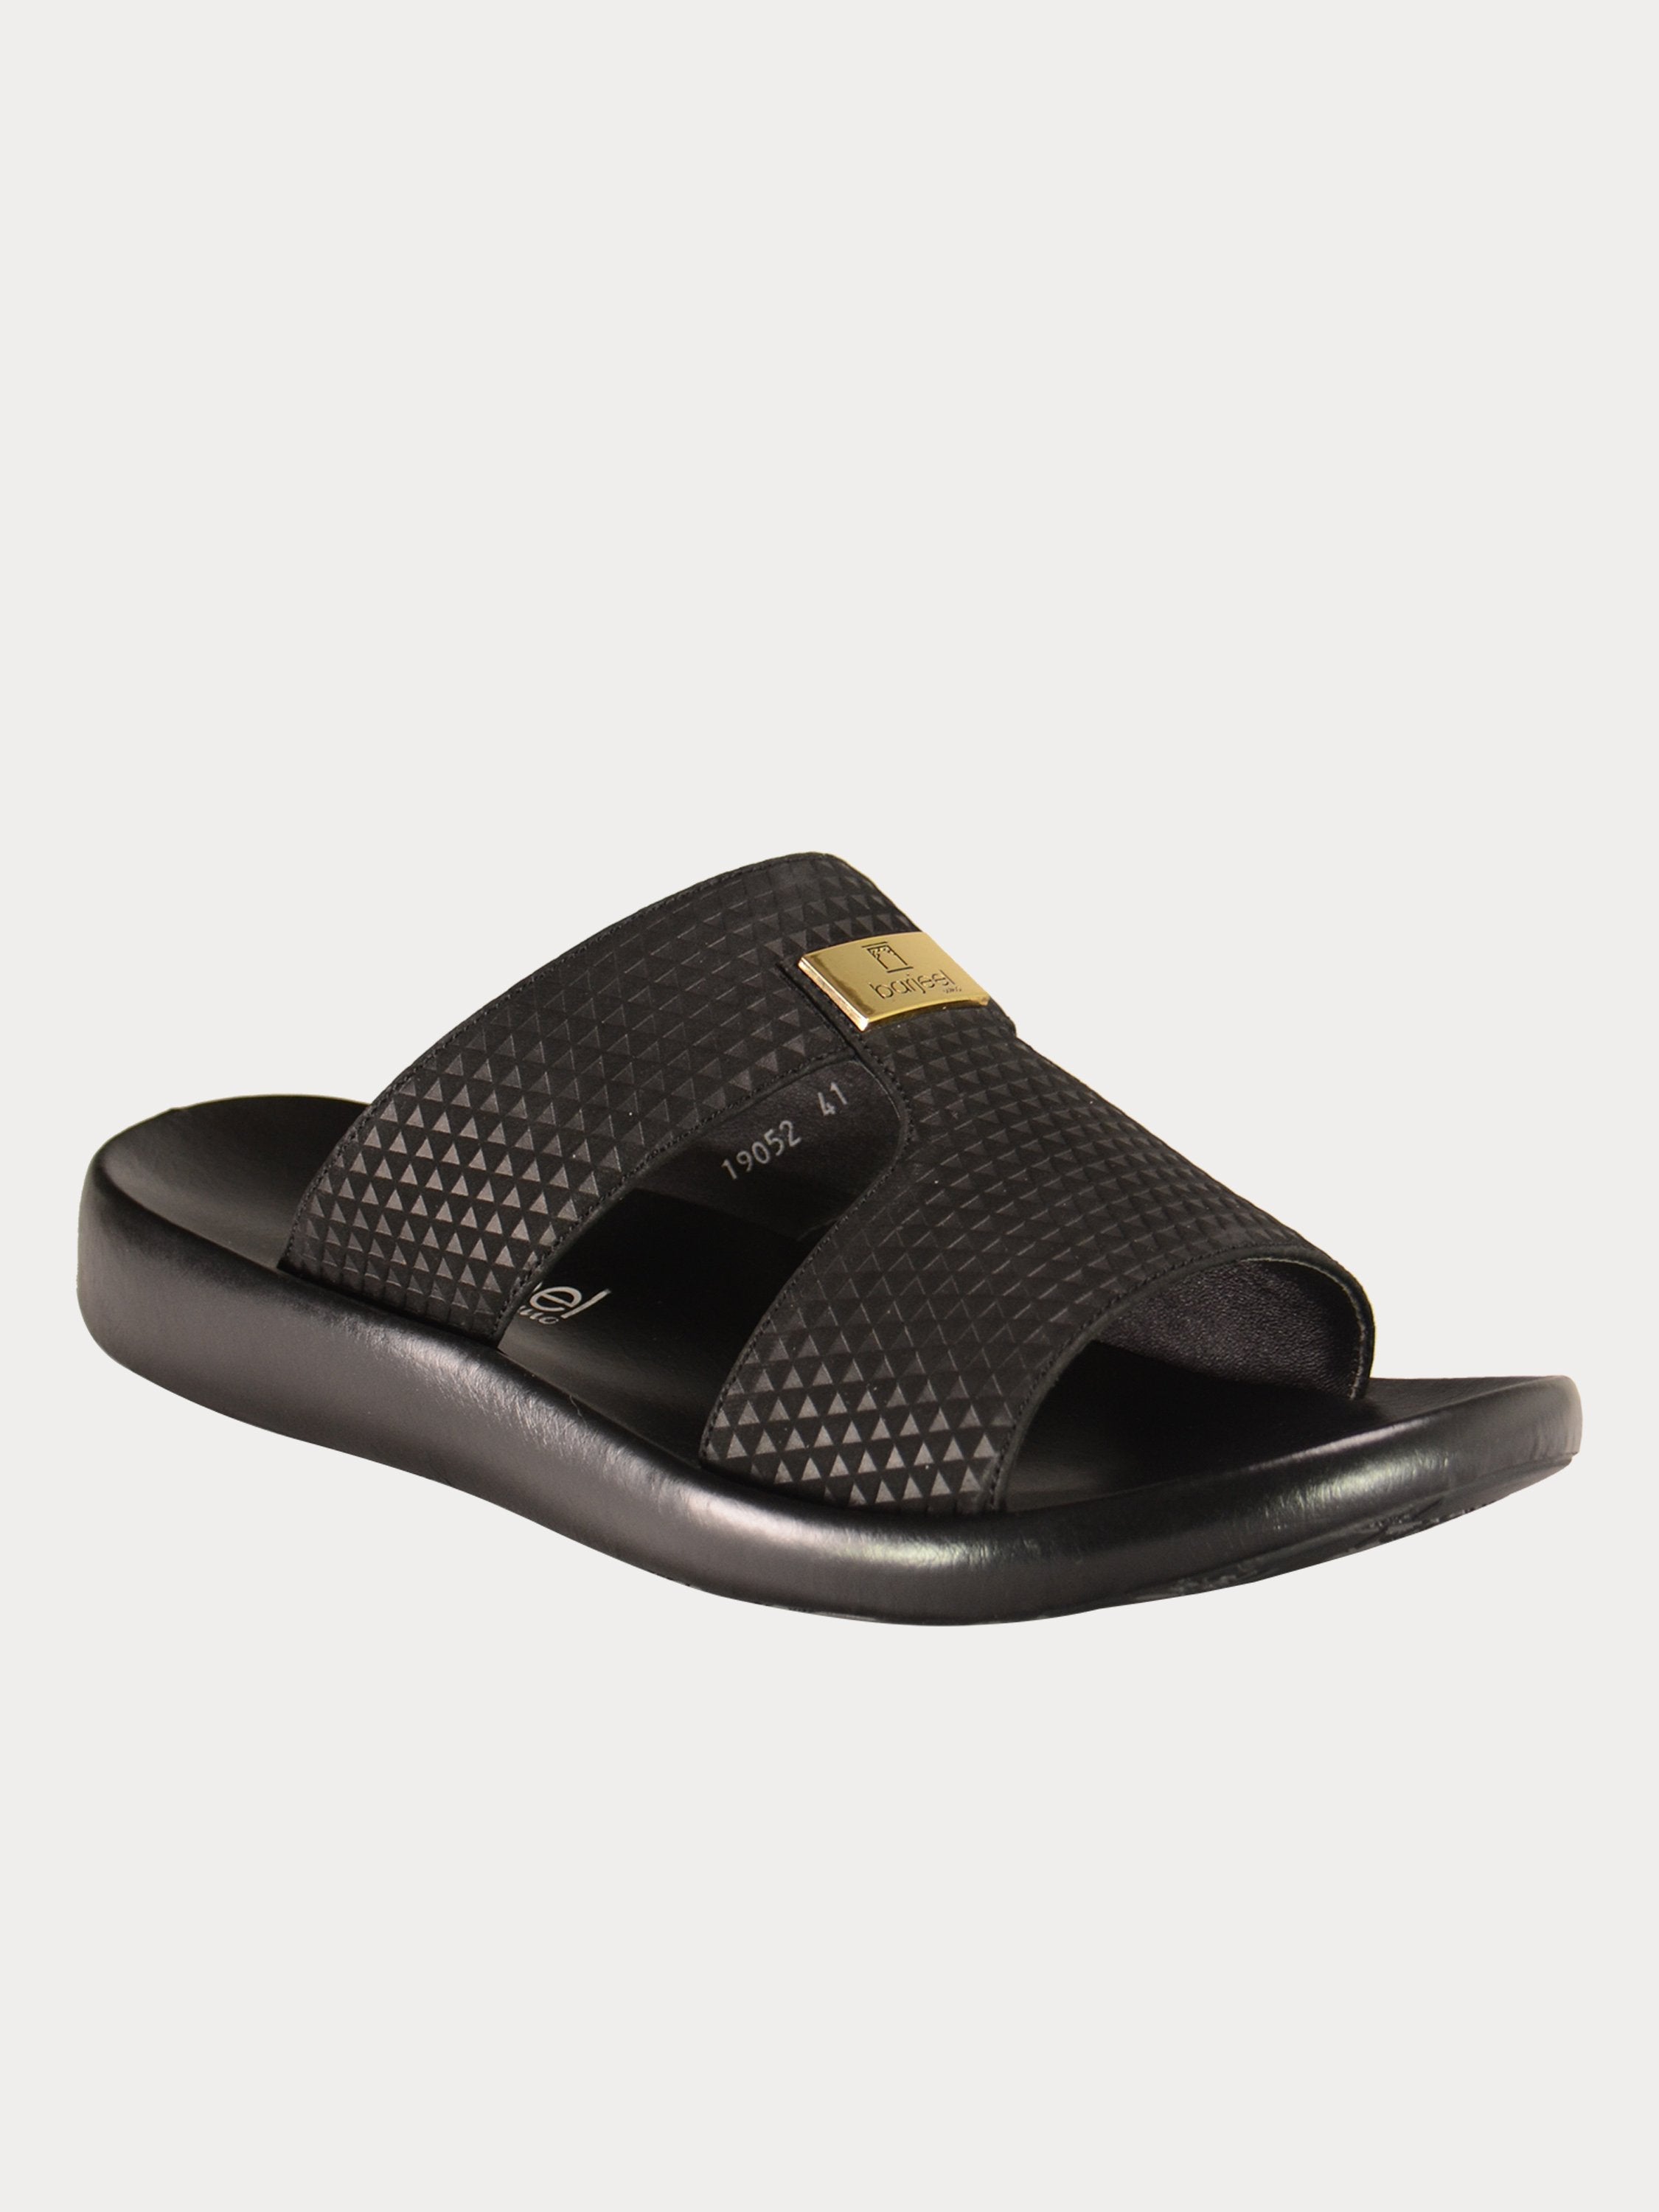 Barjeel Uno 0190520 Textured Suede Arabic Sandals #color_Black